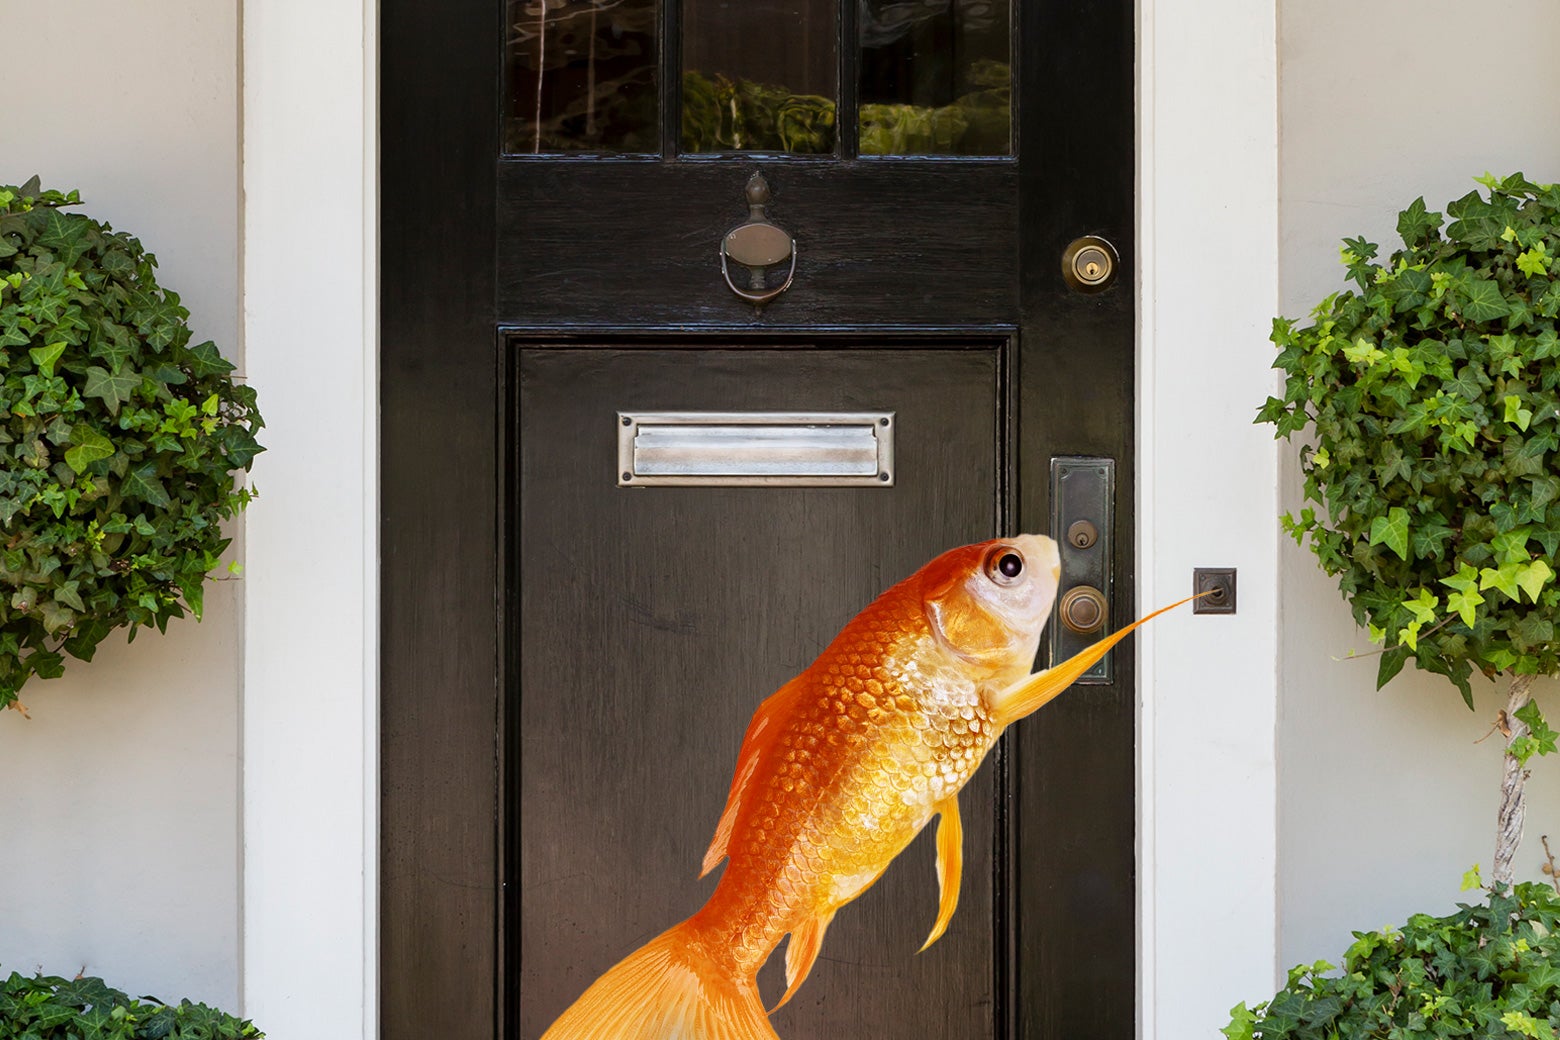 Ik bezocht de “Fish Doorbell” in Nederland.